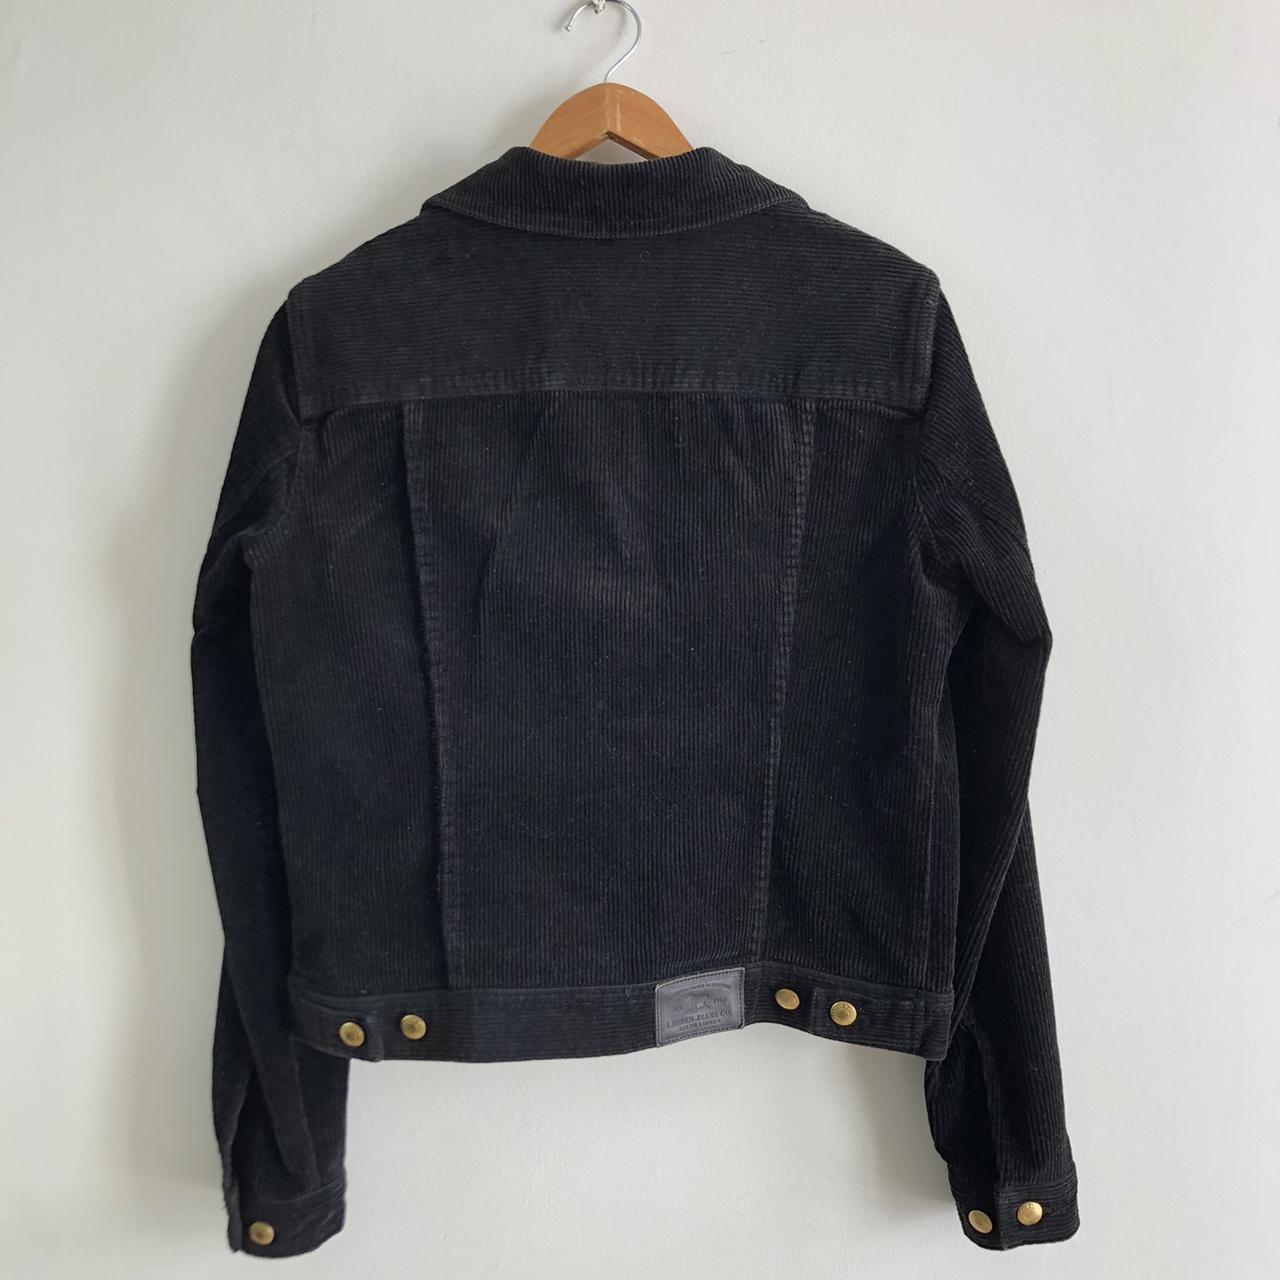 Vintage Ralph Lauren corduroy jacket. Excellent... - Depop